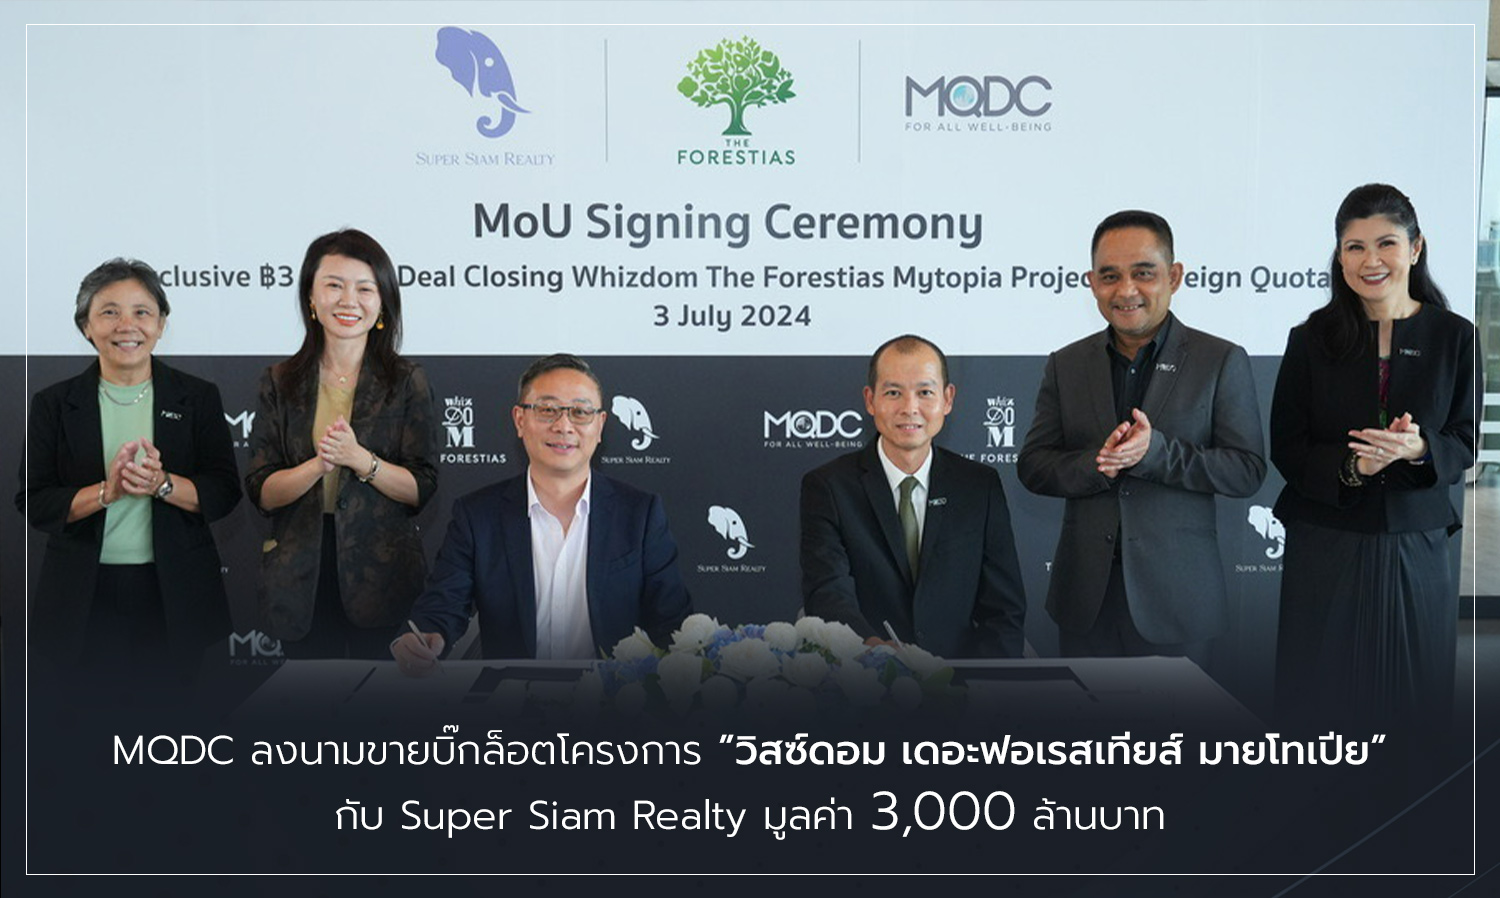 MQDC ลงนามขายบิ๊กล็อตโครงการ วิสซ์ดอม เดอะฟอเรสเทียส์ มายโทเปีย กับ Super Siam Realty มูลค่า 3,000 ล้านบาท